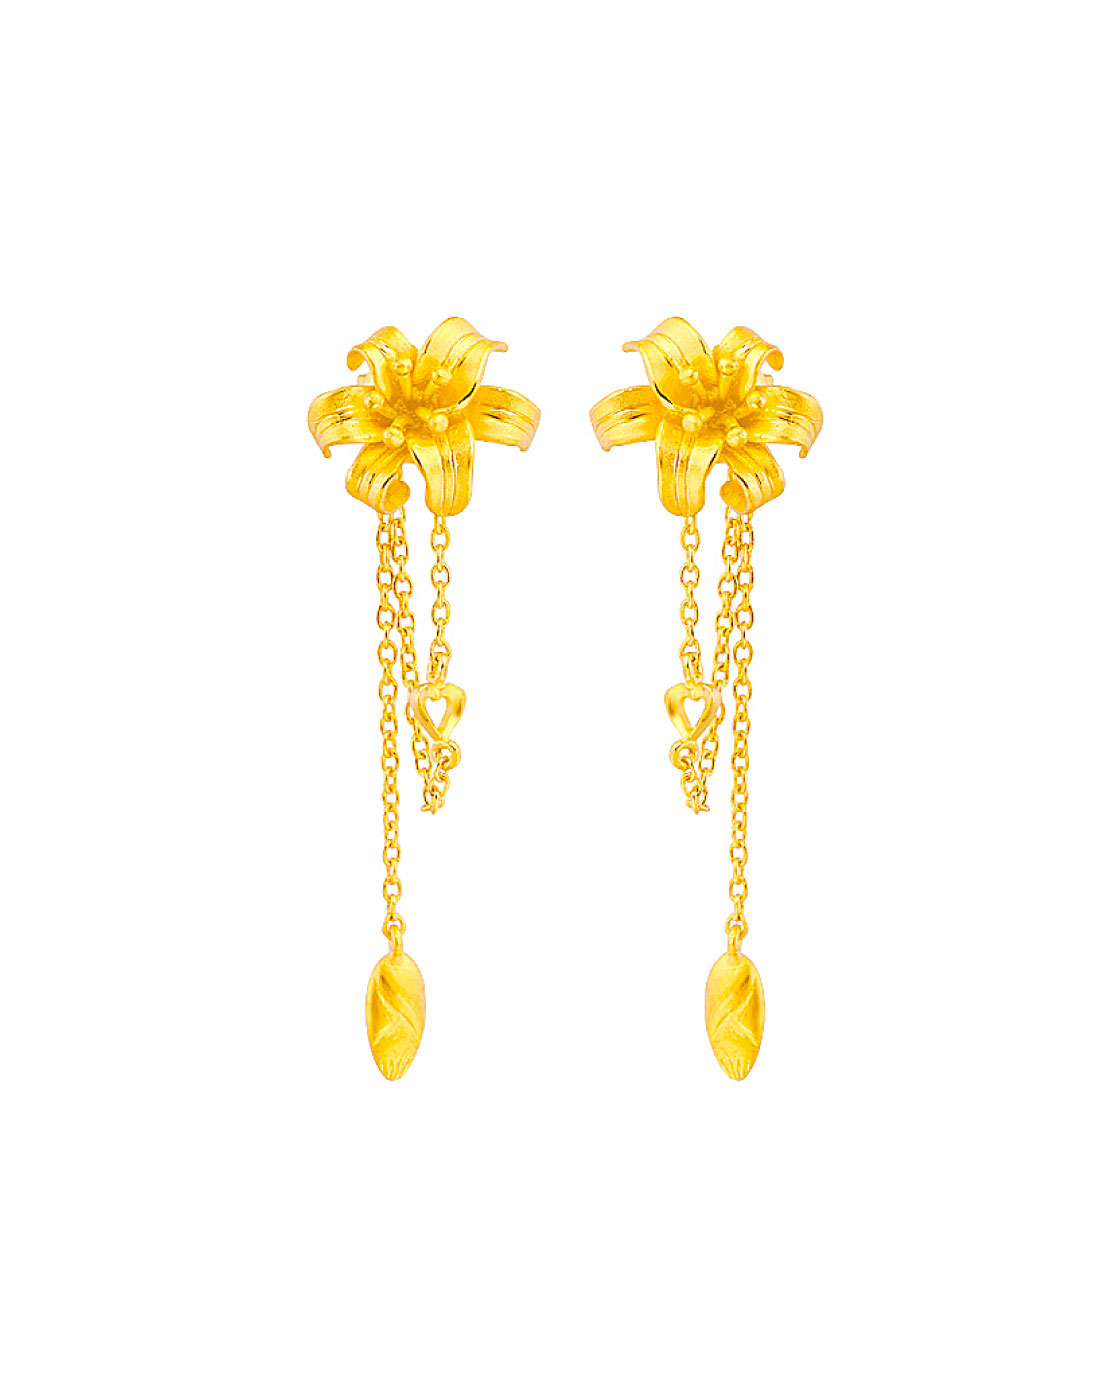 欧美时尚项链 夸张超奢华 珍珠水晶宝石项链耳环套装饰品批发-阿里巴巴